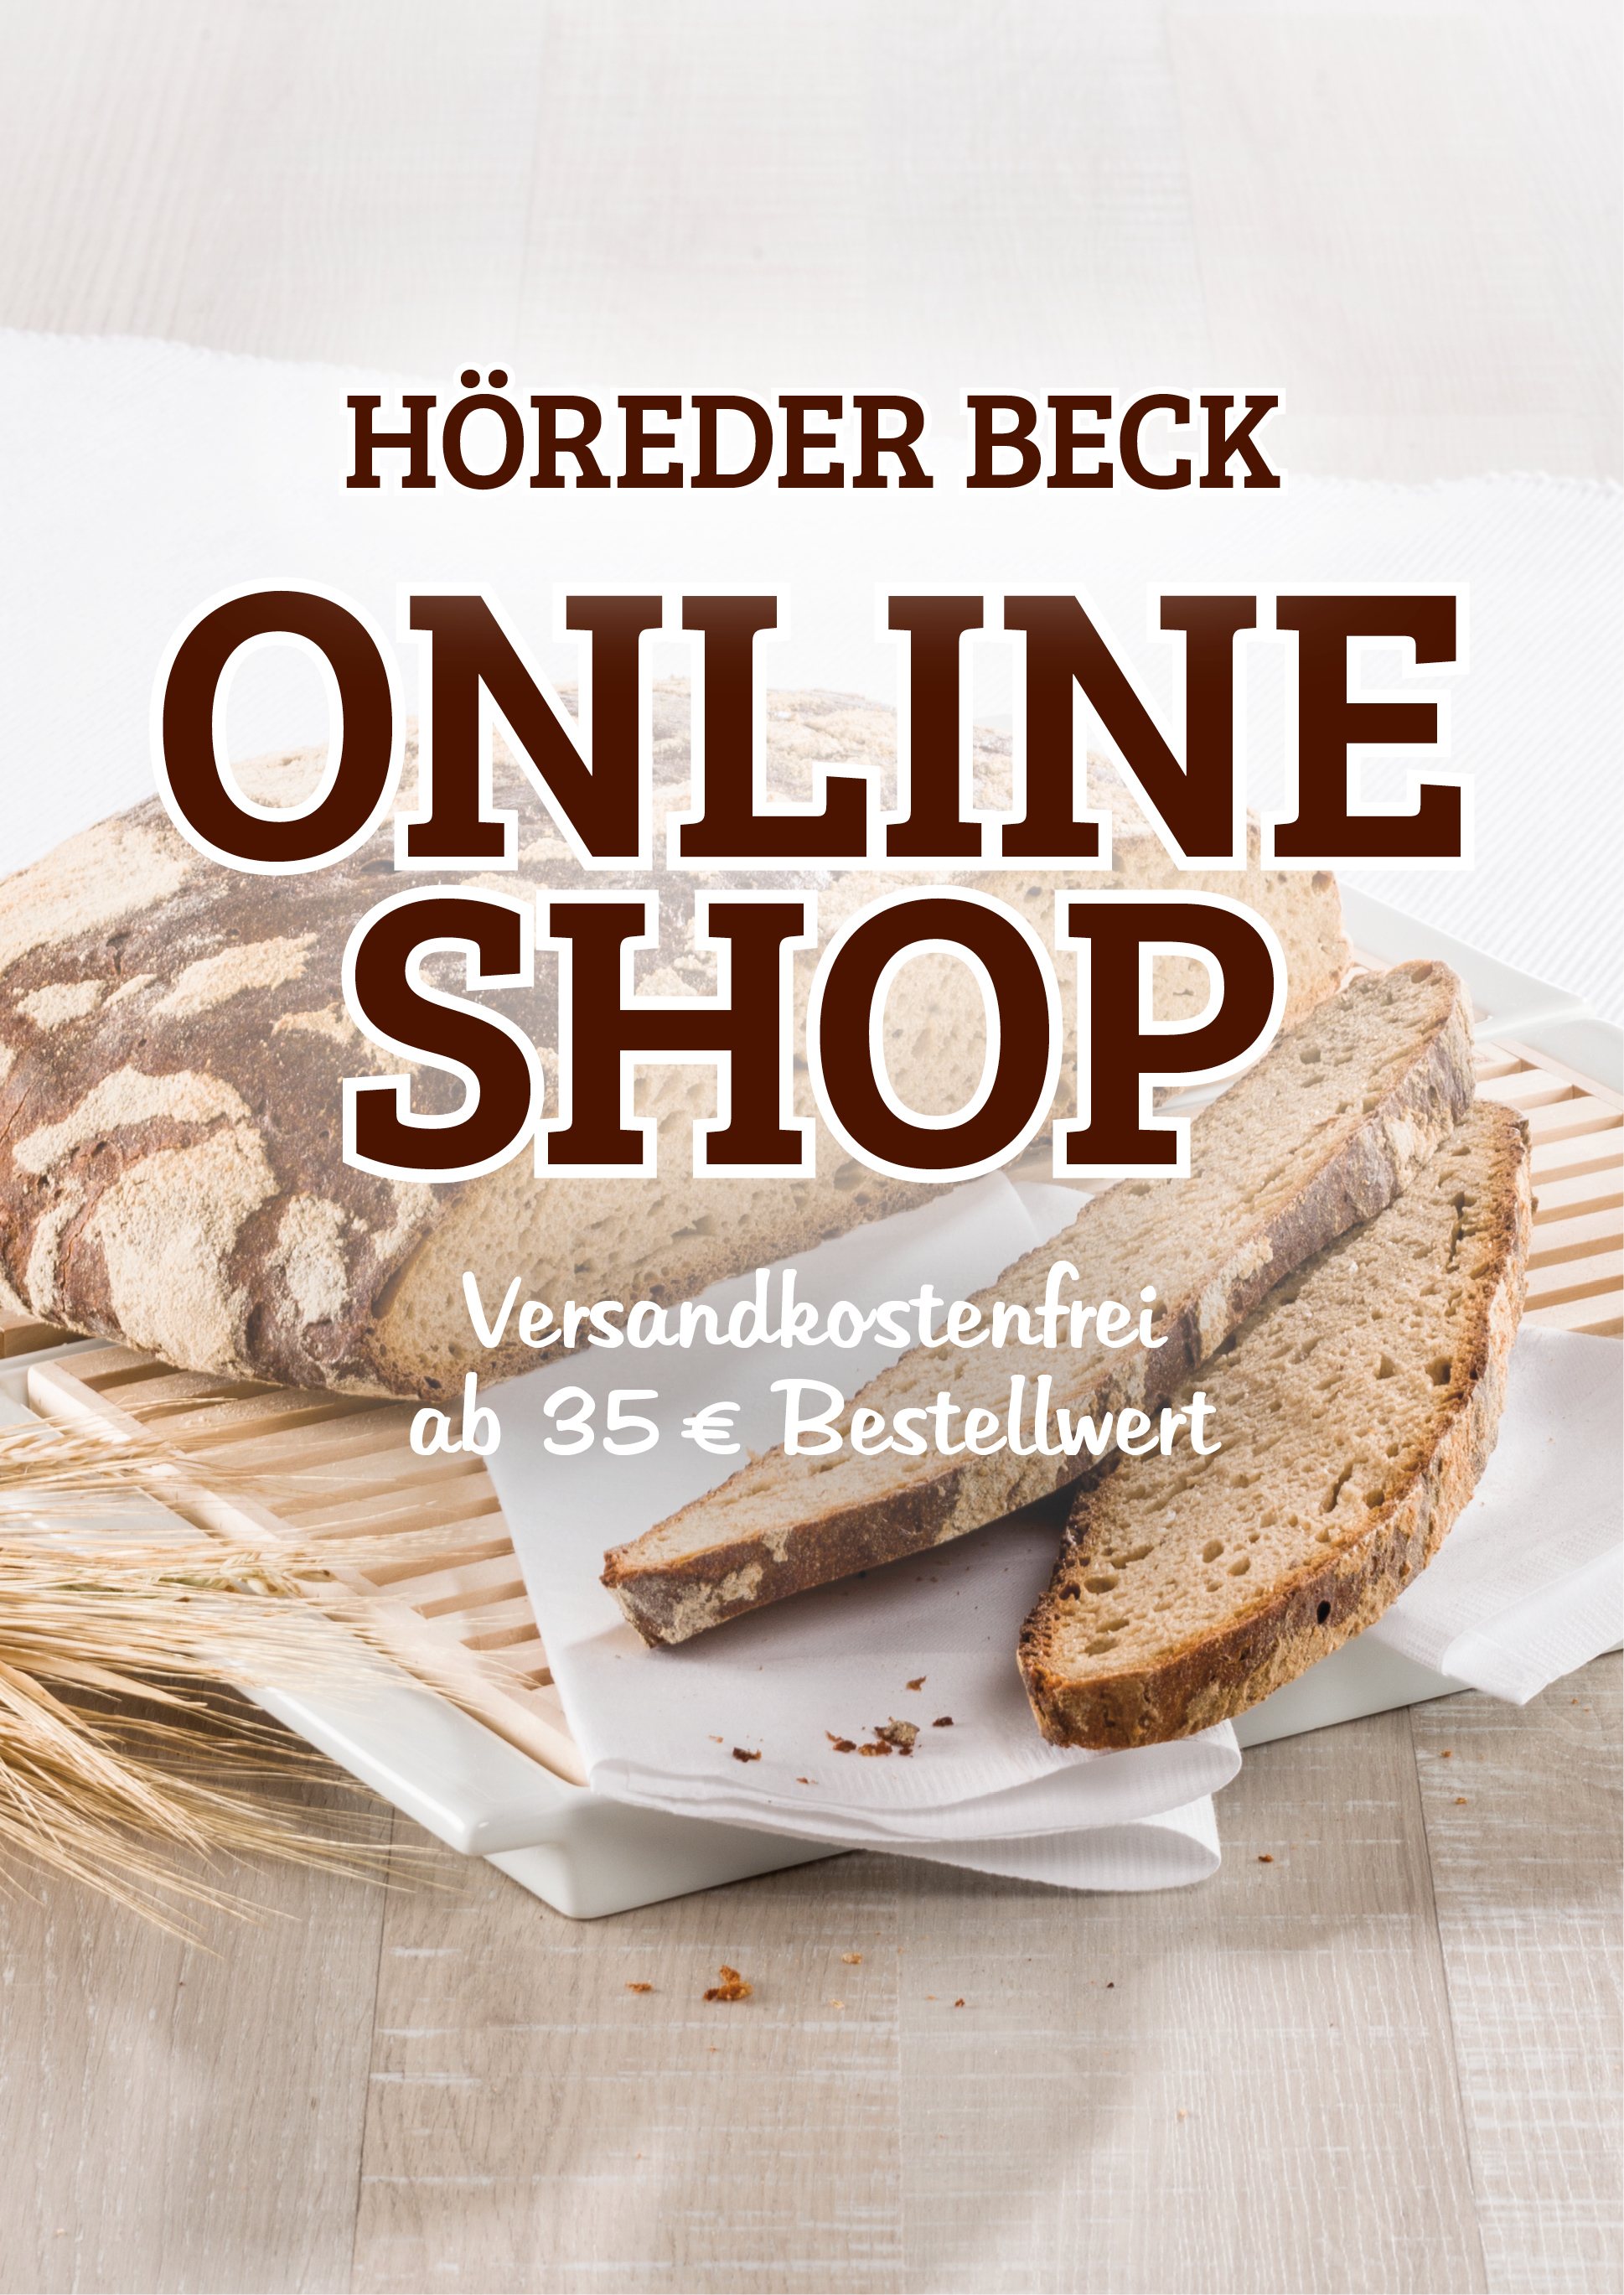 Der Onlineshop von HÖREDER BECK